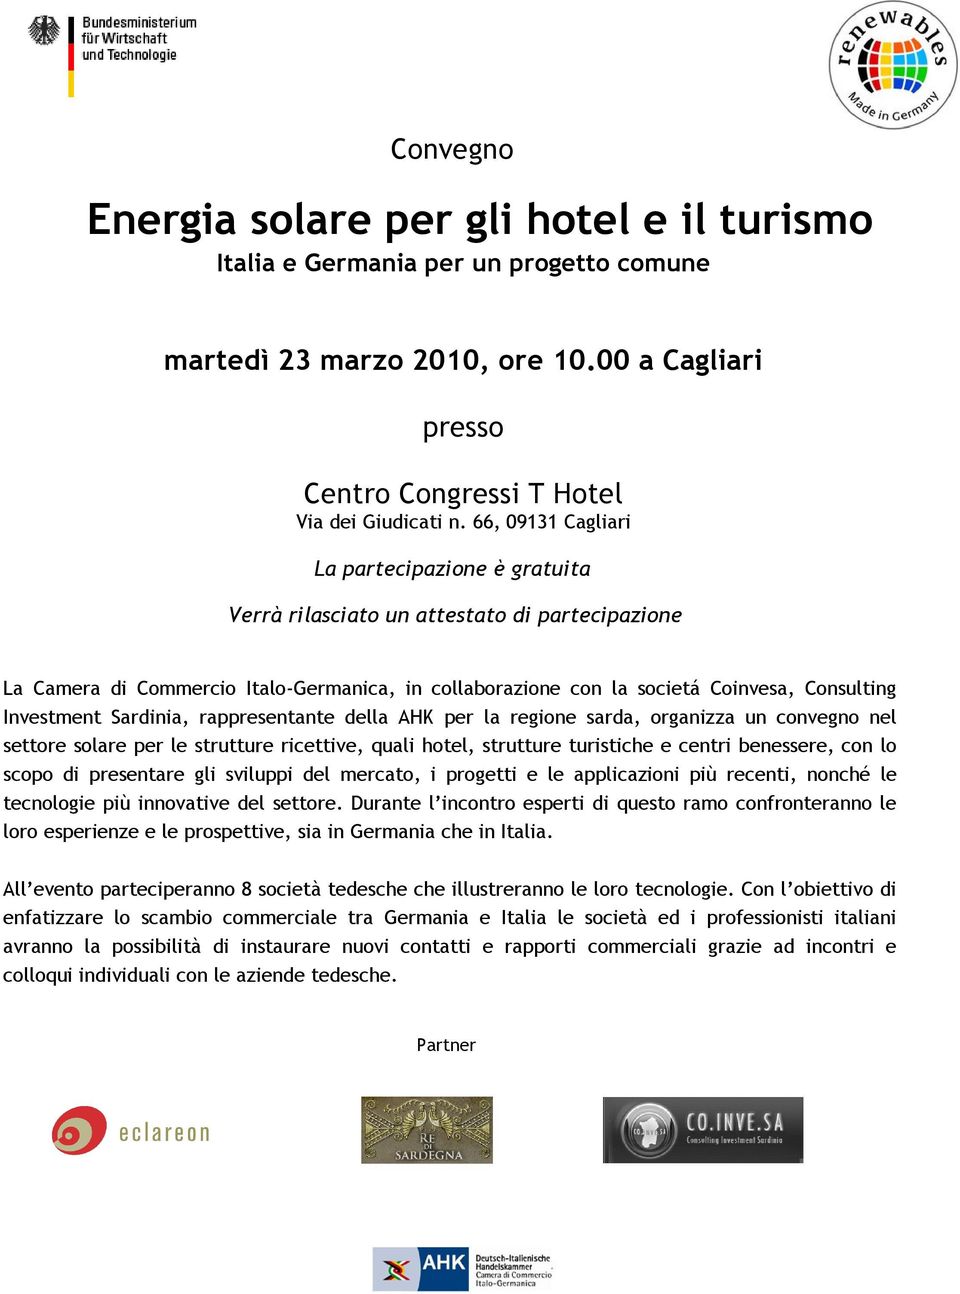 Investment Sardinia, rappresentante della AHK per la regione sarda, organizza un convegno nel settore solare per le strutture ricettive, quali hotel, strutture turistiche e centri benessere, con lo